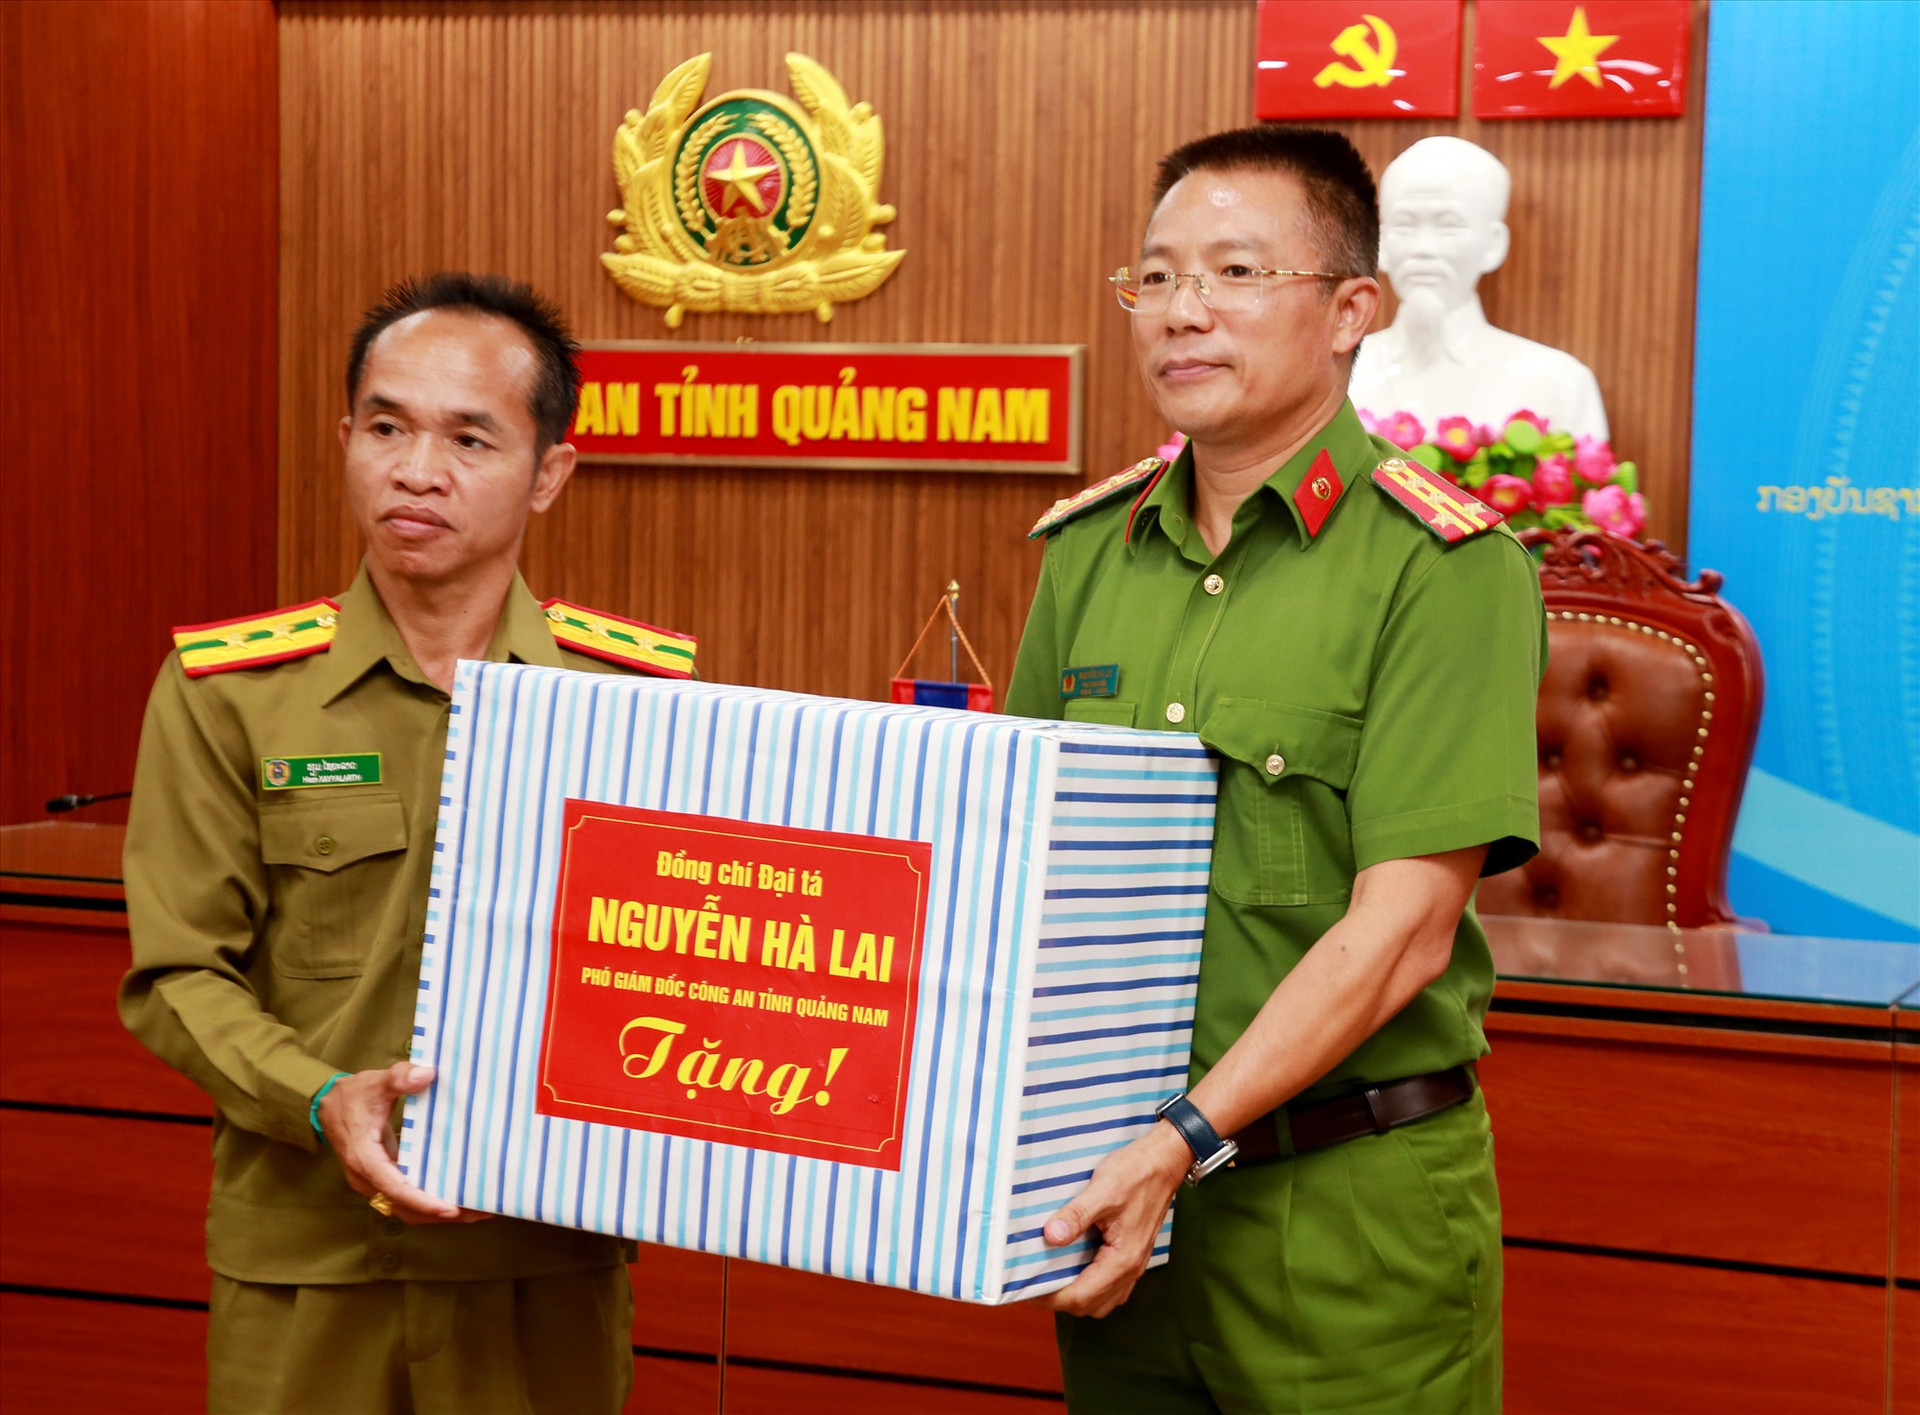 Đại tá Nguyễn Hà Lai trao quà cho lãnh đạo Công an tỉnh Sê Kông. Ảnh: T.C